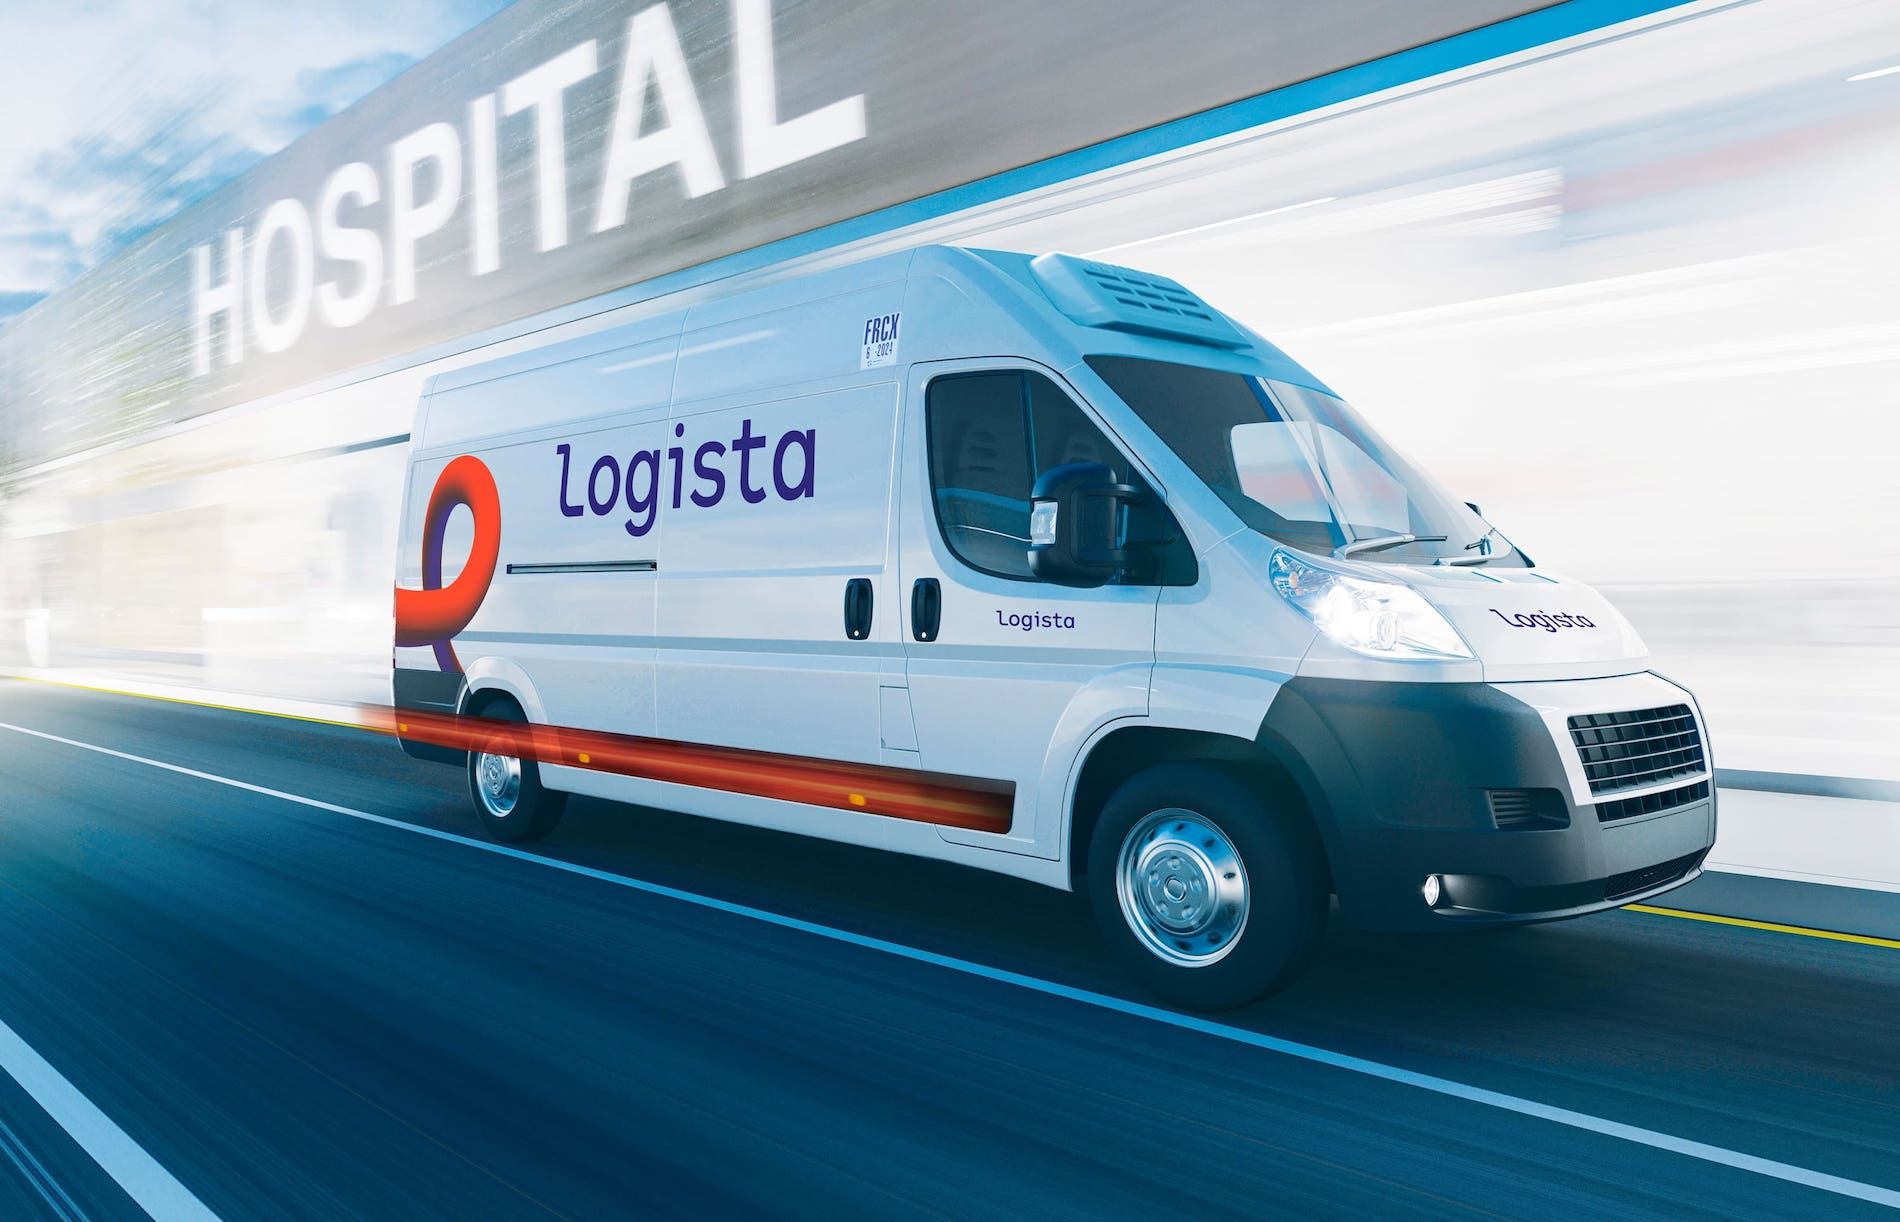 Logista Pharma da servicio a más de 25.000 farmacias en España y Portugal.